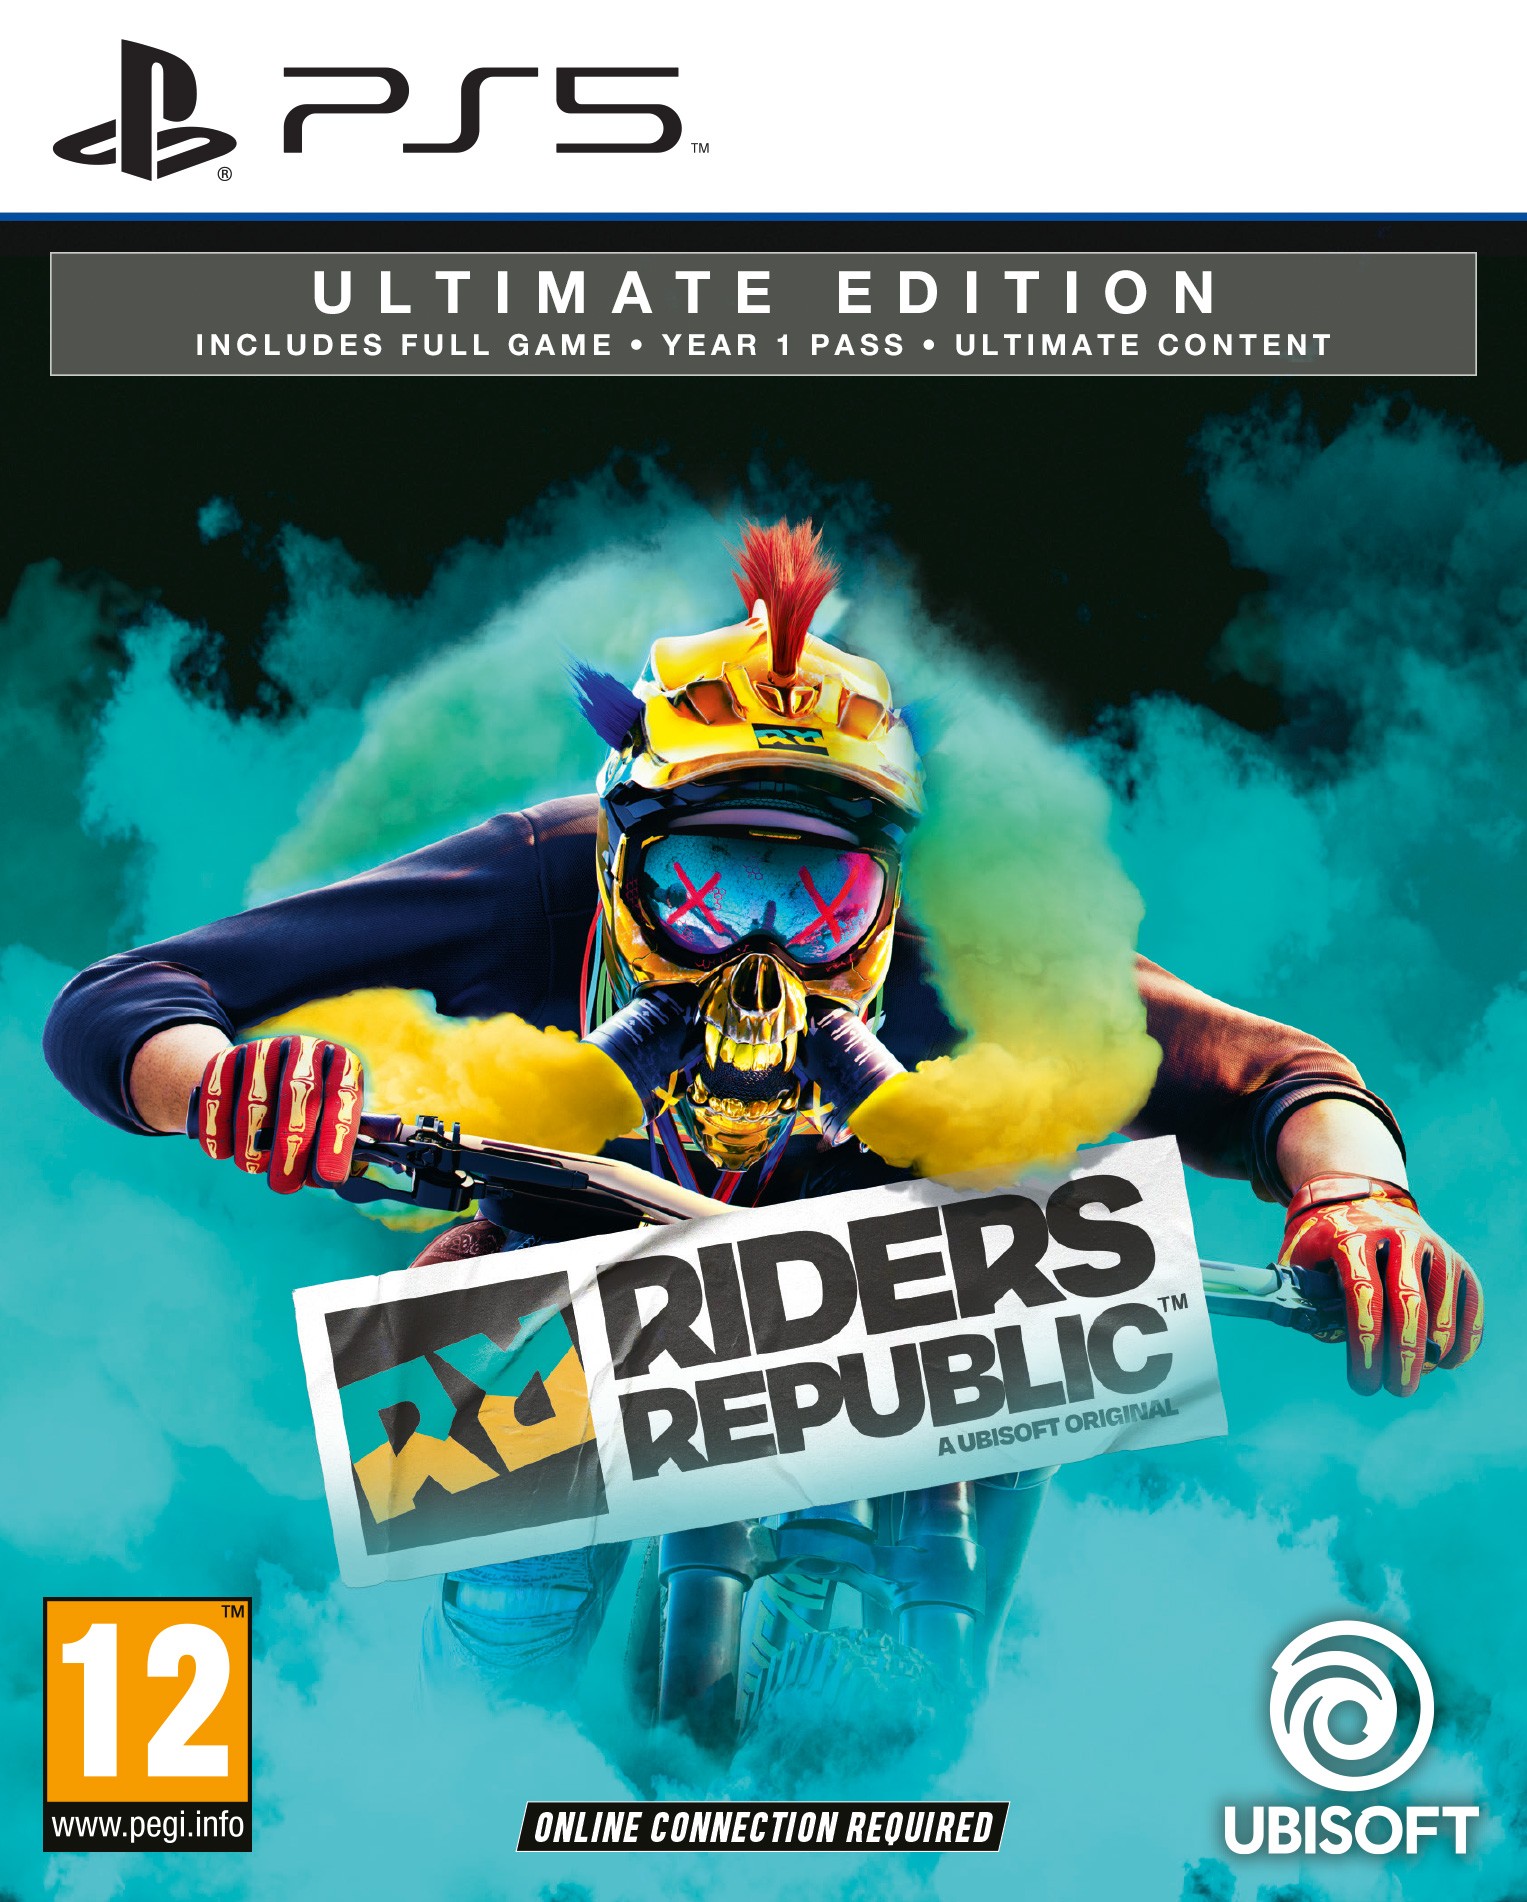 riders republic game